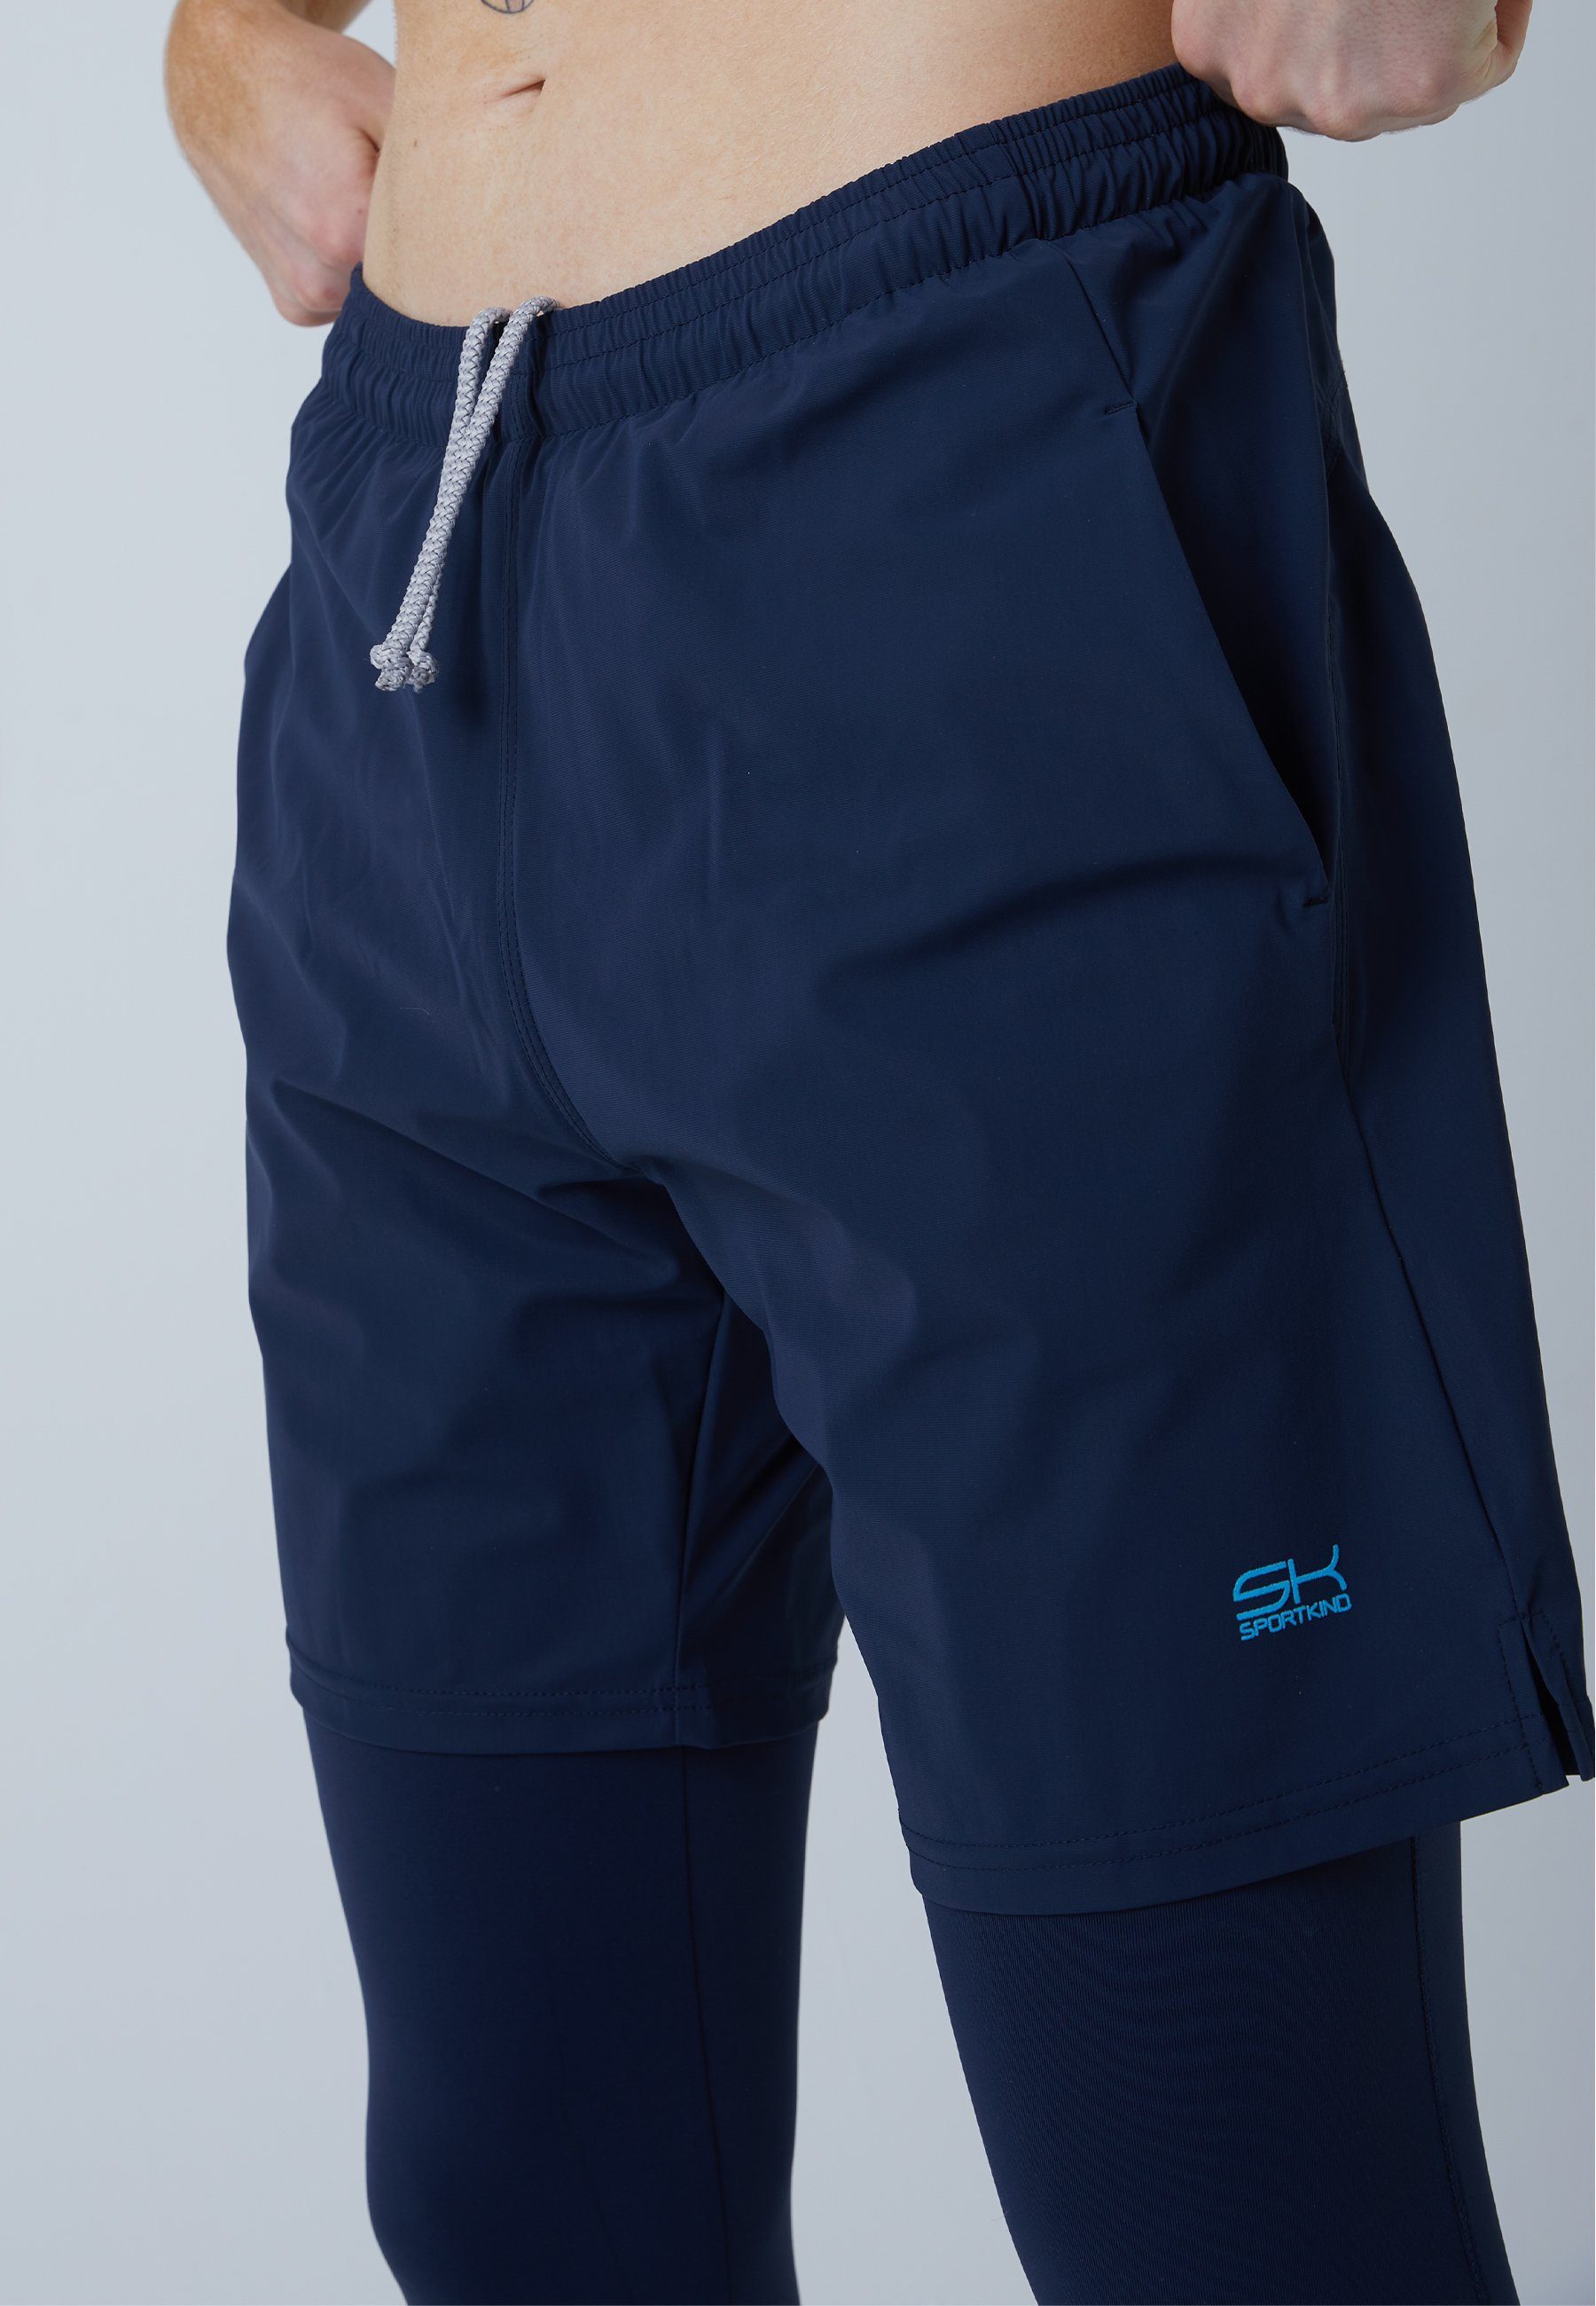 SPORTKIND Sporthose 2-in-1 Shorts Jungen Herren navy Leggings & blau mit